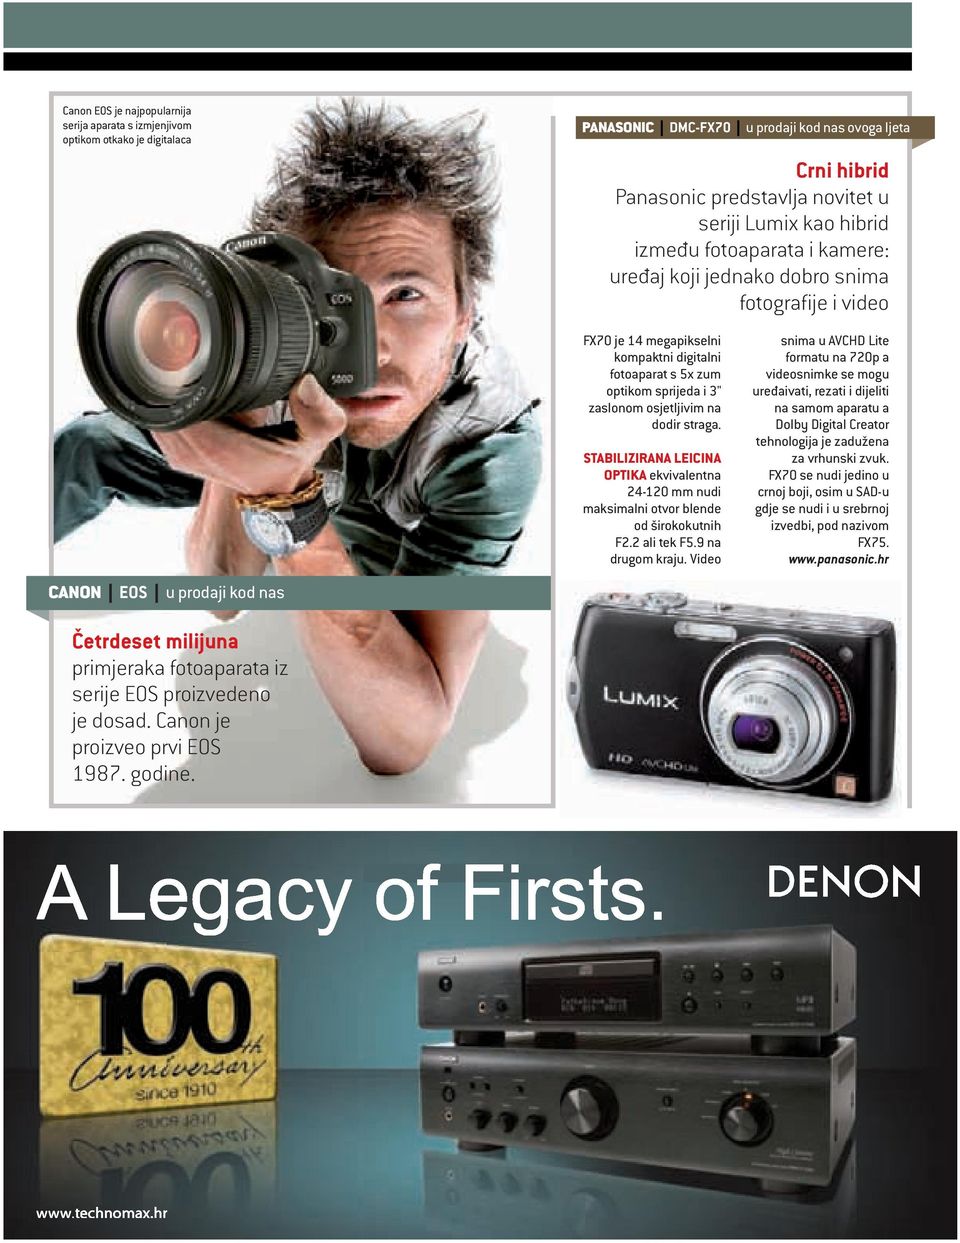 Canon je proizveo prvi EOS 1987. godine. FX70 je 14 megapikselni kompaktni digitalni fotoaparat s 5x zum optikom sprijeda i 3" zaslonom osjetljivim na dodir straga.